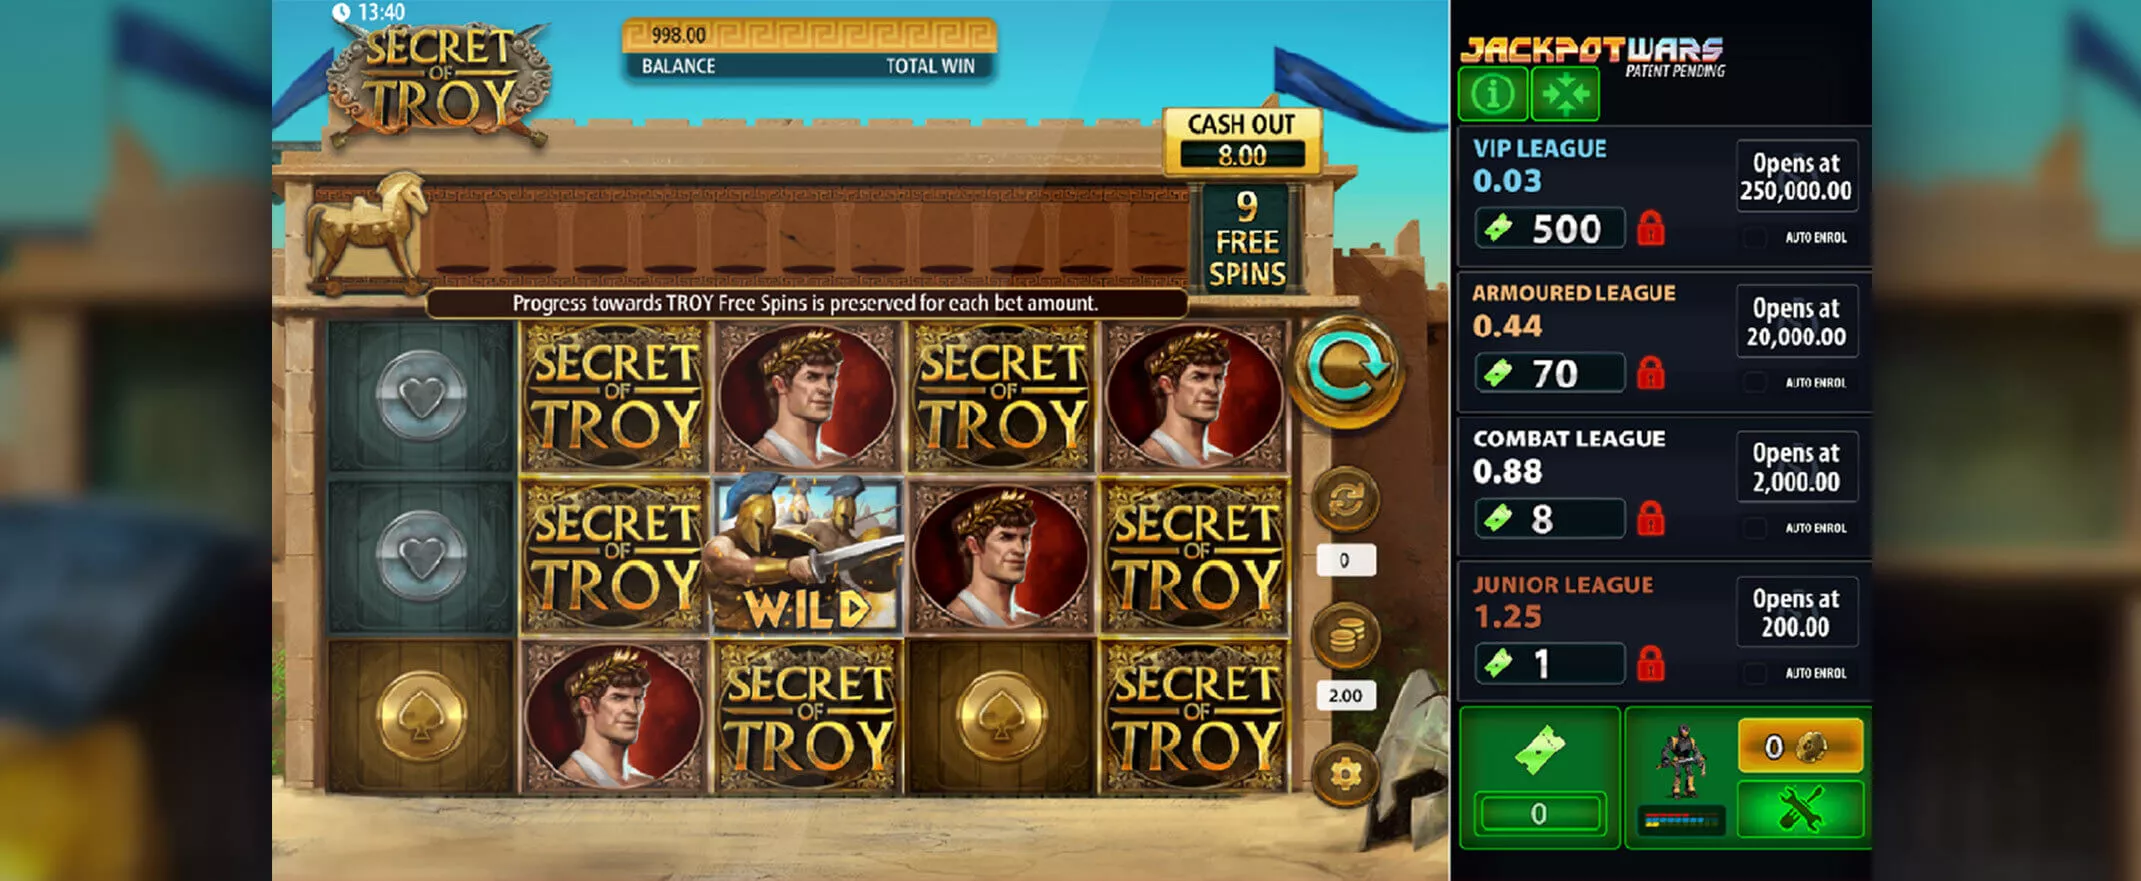 Secret of Troy slot screenshot of the reels